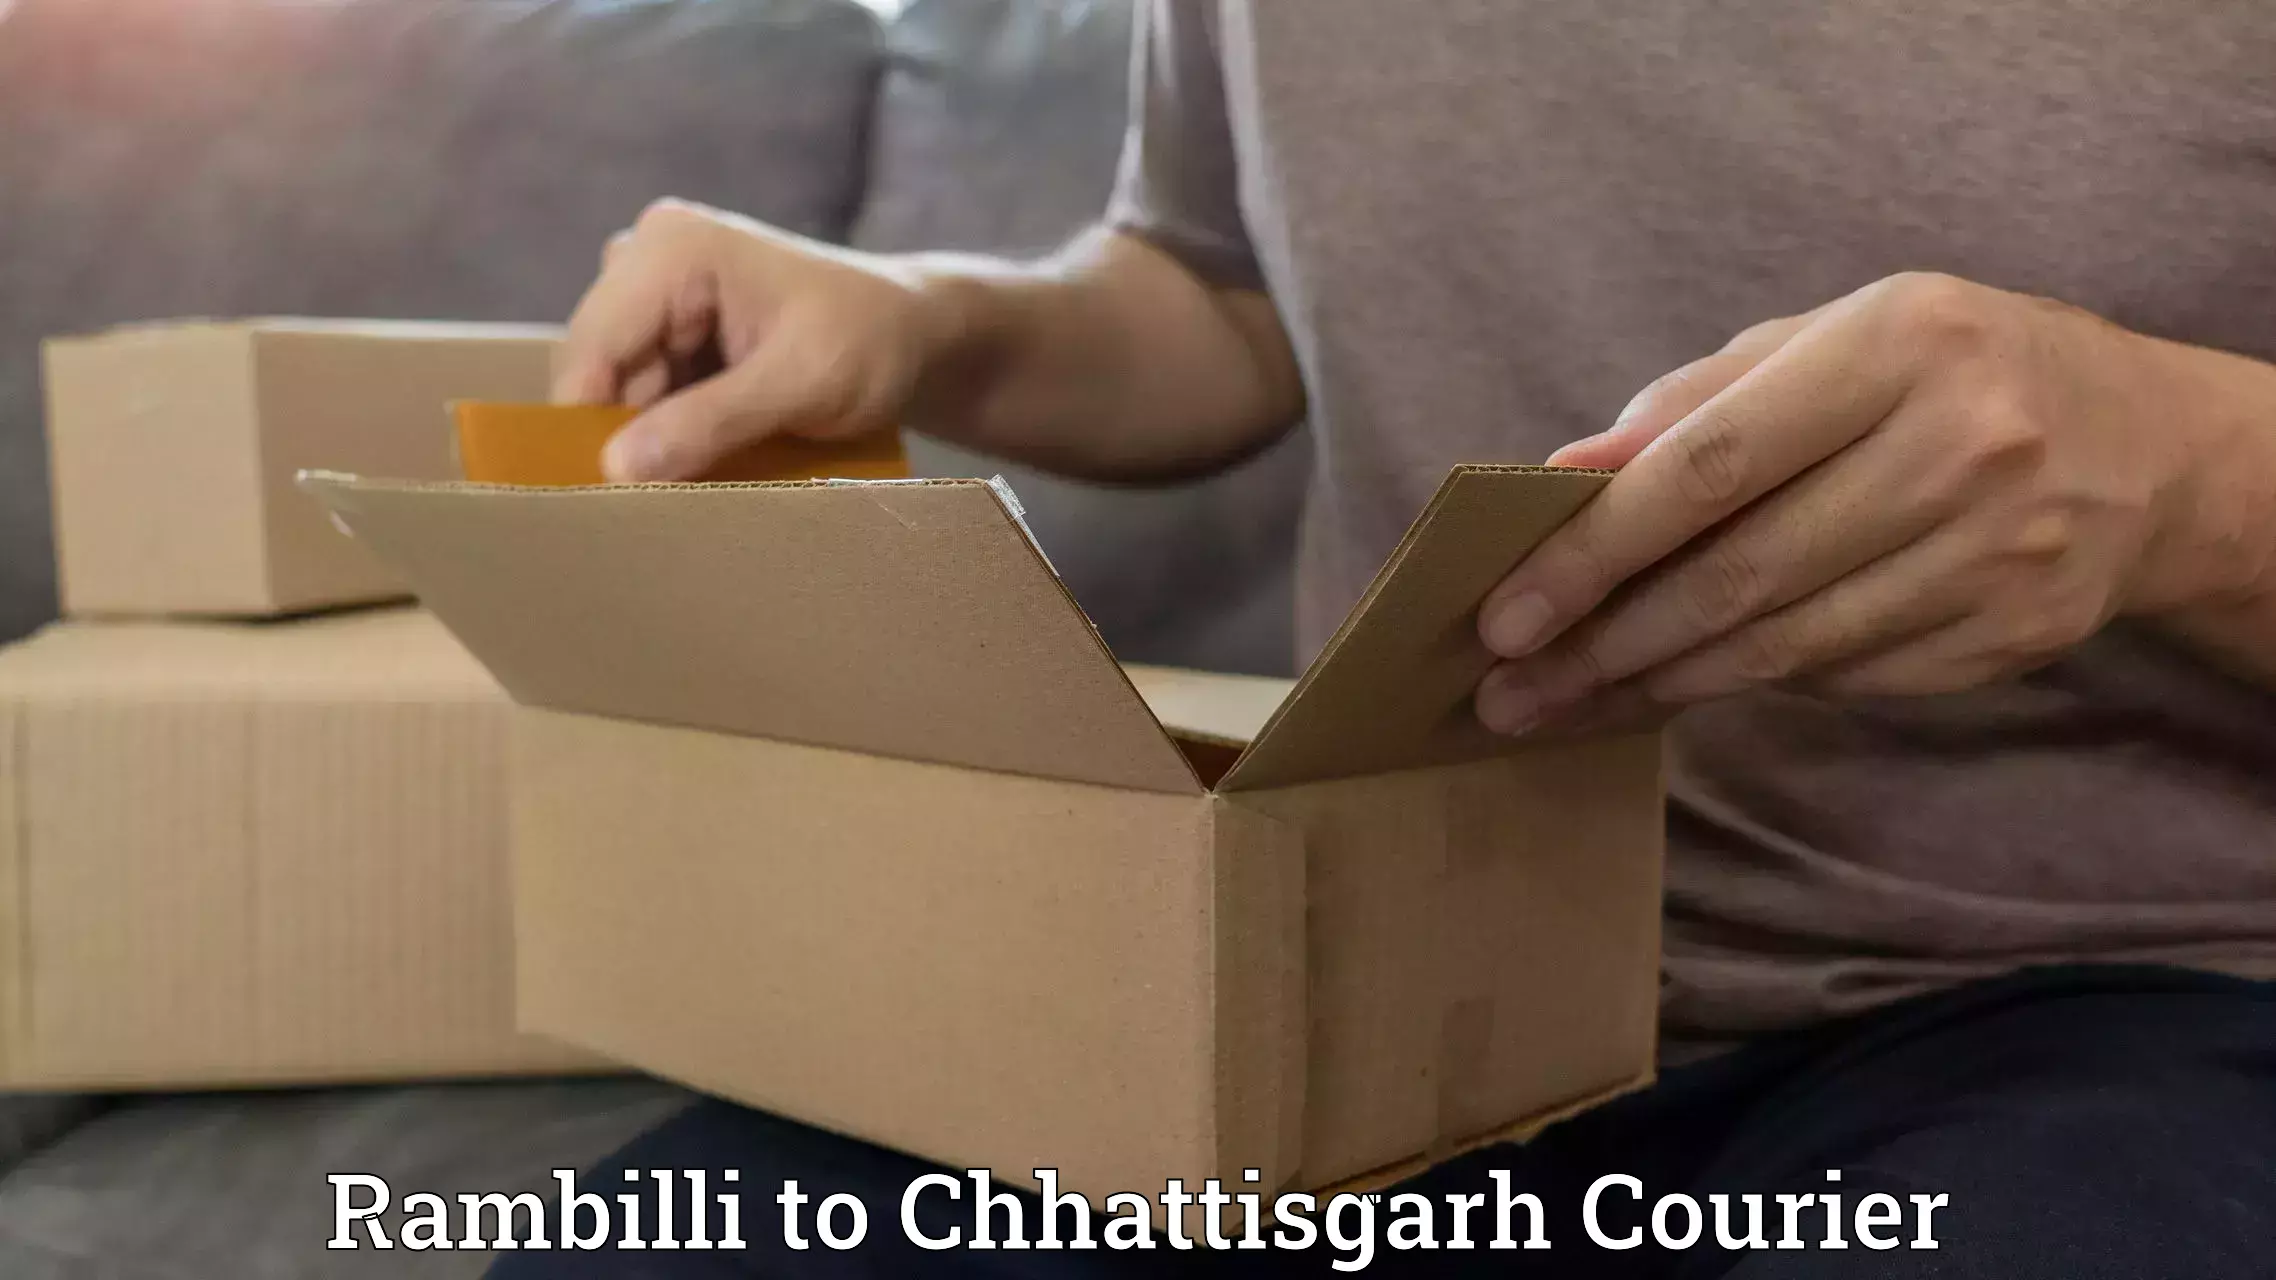 Automated parcel services Rambilli to Chhattisgarh